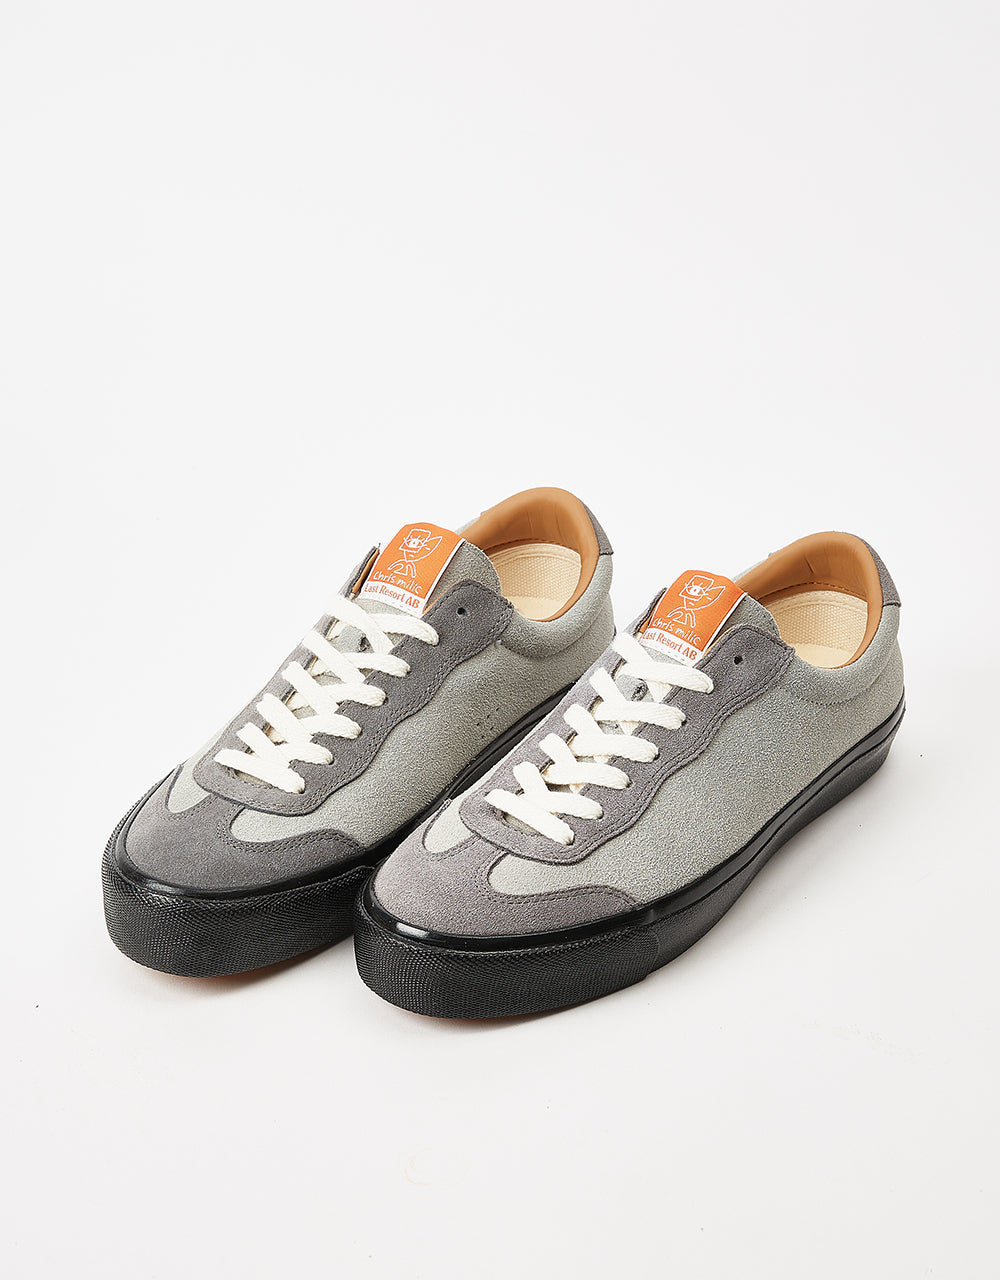 Last Resort AB VM004 Milic Suede Lo Skate Shoes - Duo Grey/Black